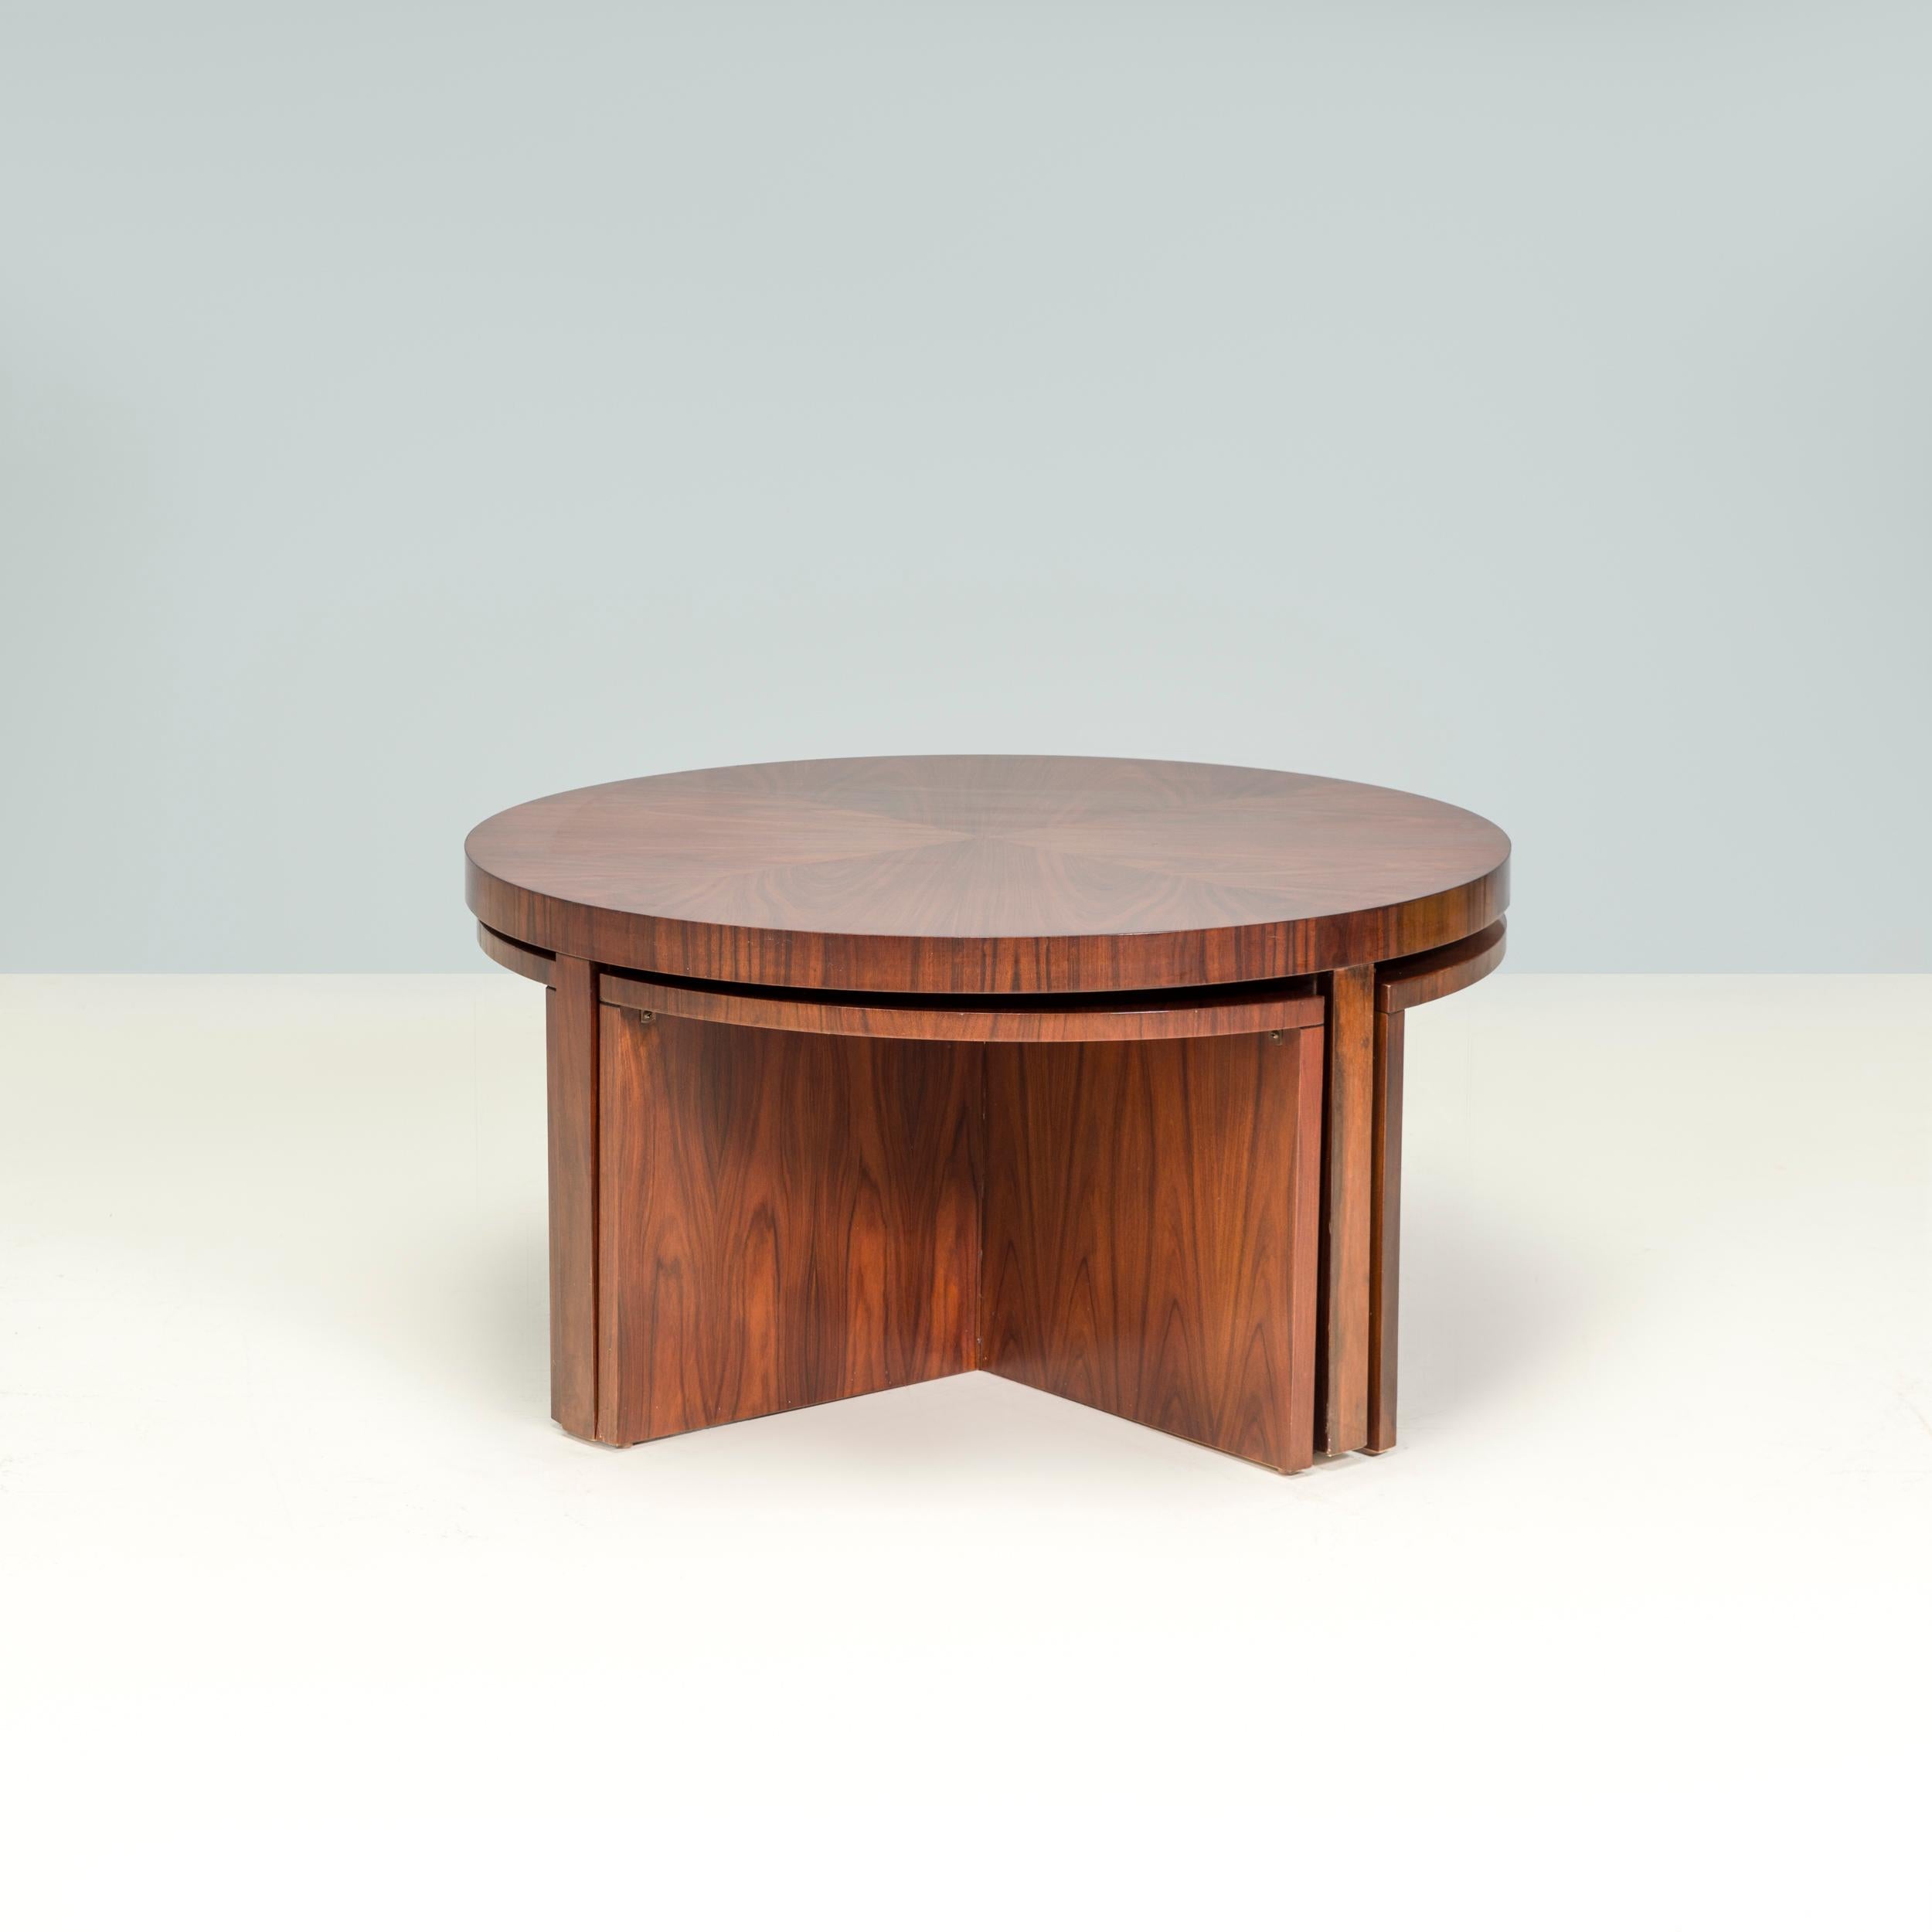 Inspirée des années 1930, la collection Duke de Ralph Lauren allie un design élégant à des matériaux de luxe fabriqués à la main.

Construite en bois avec une finition en placage de bois de rose Santos, la table basse Duke est formée d'une grande